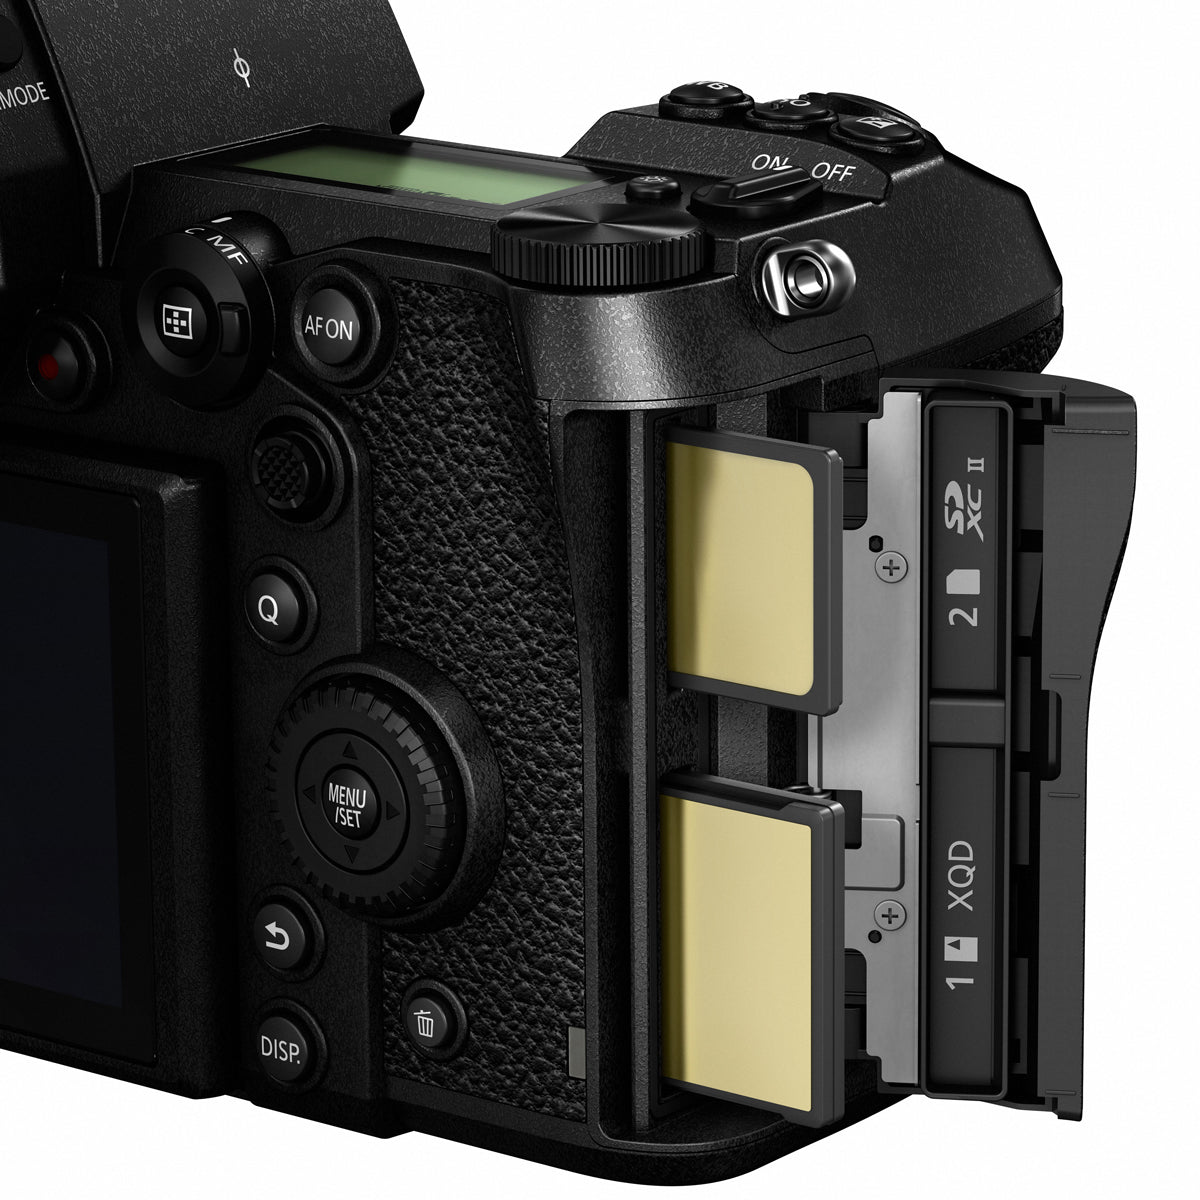 Panasonic Lumix S1R Full Frame Mirrorless Camera Body